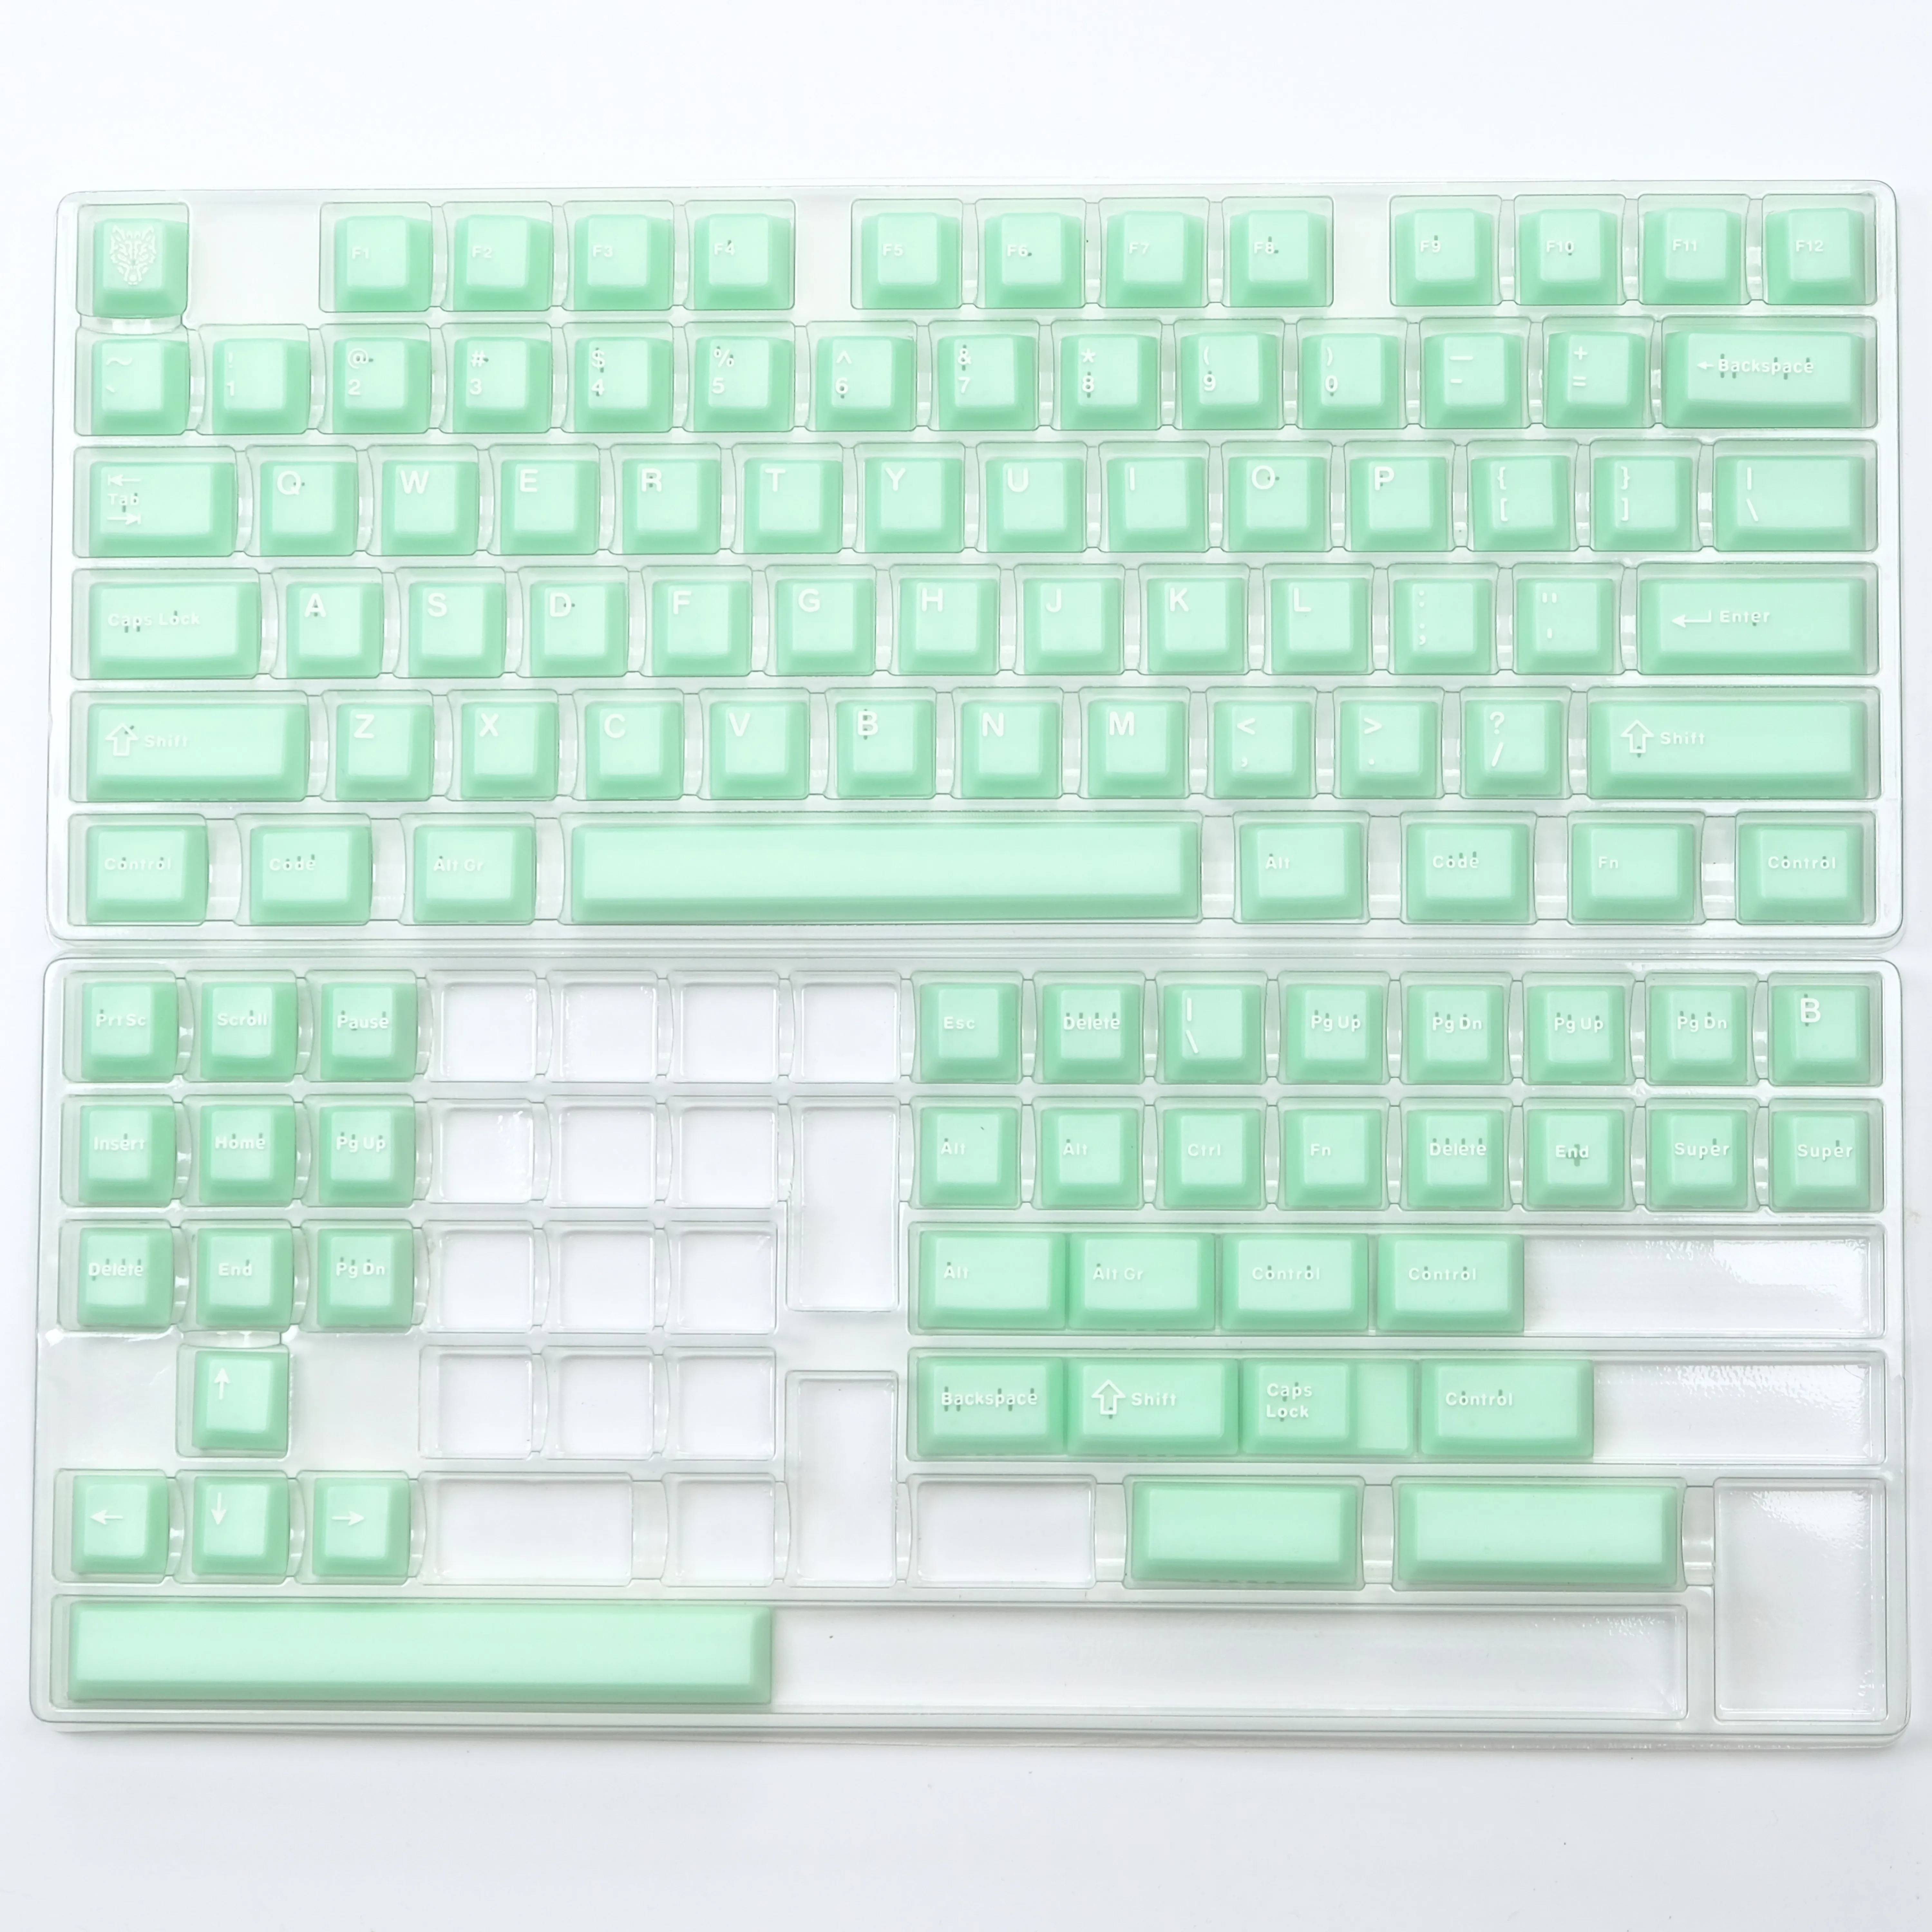 Jade Tema, Perfil cereja, teclado mecânico